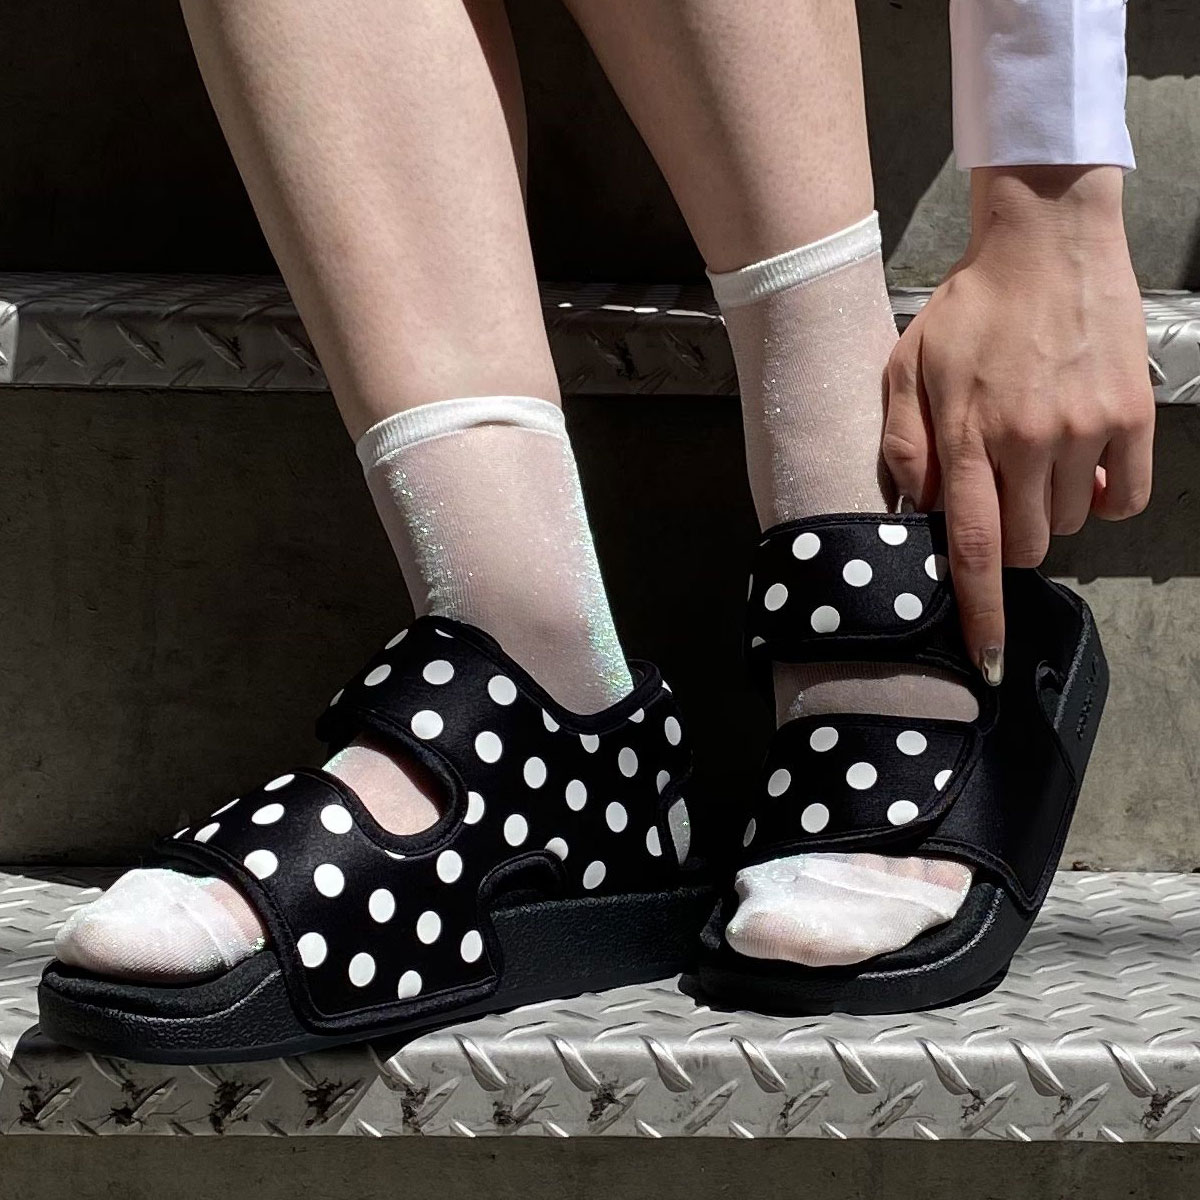 adilette 3.0 sandals polka dot